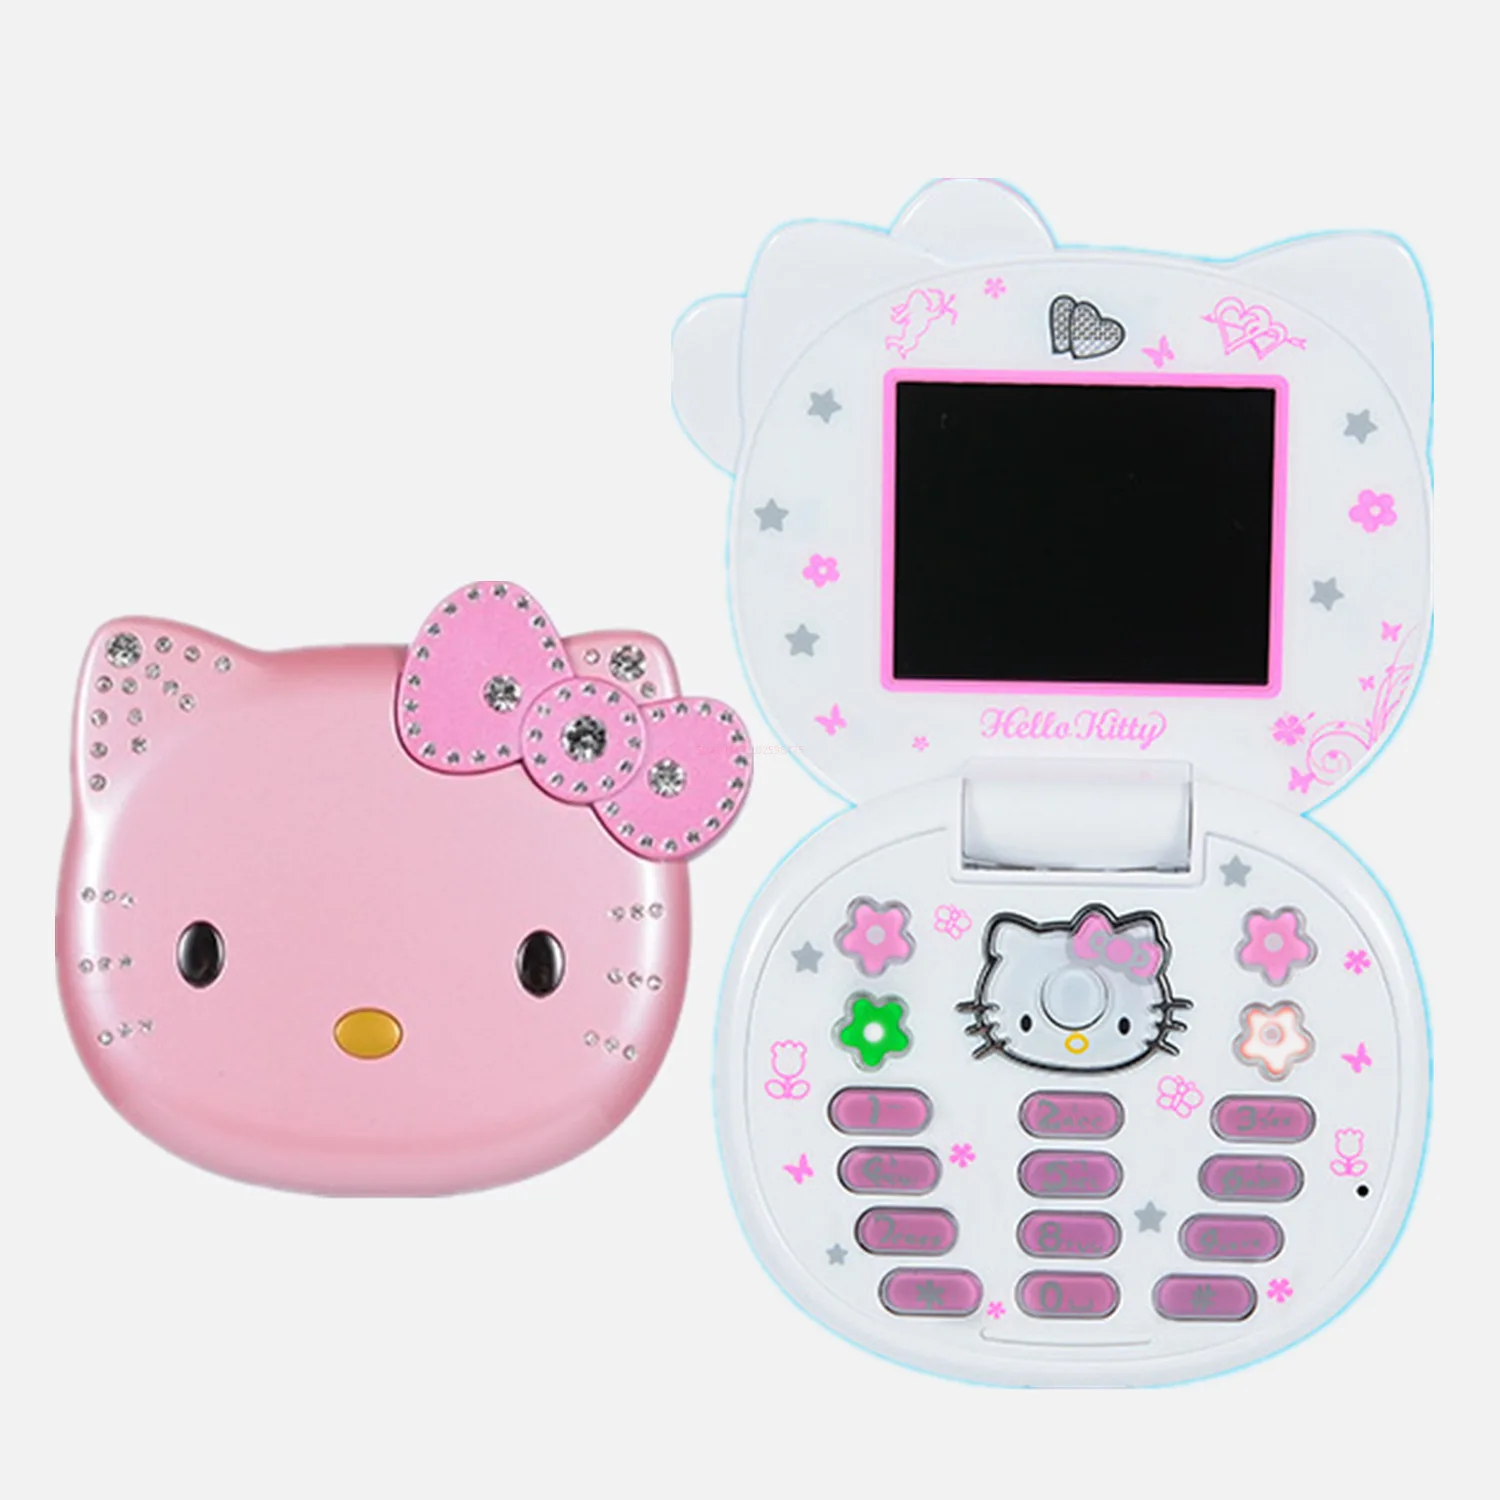 Download Sanrio Desktop Hello Kitty Pink-Striped Background